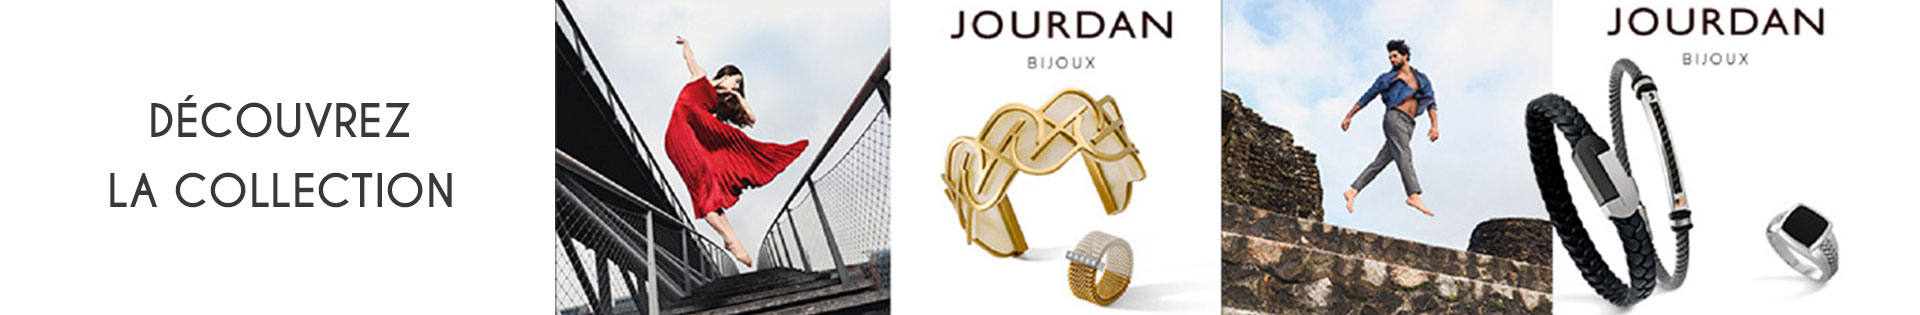 Marques de bijoux - Jourdan Bijoux - Boucles d'oreille